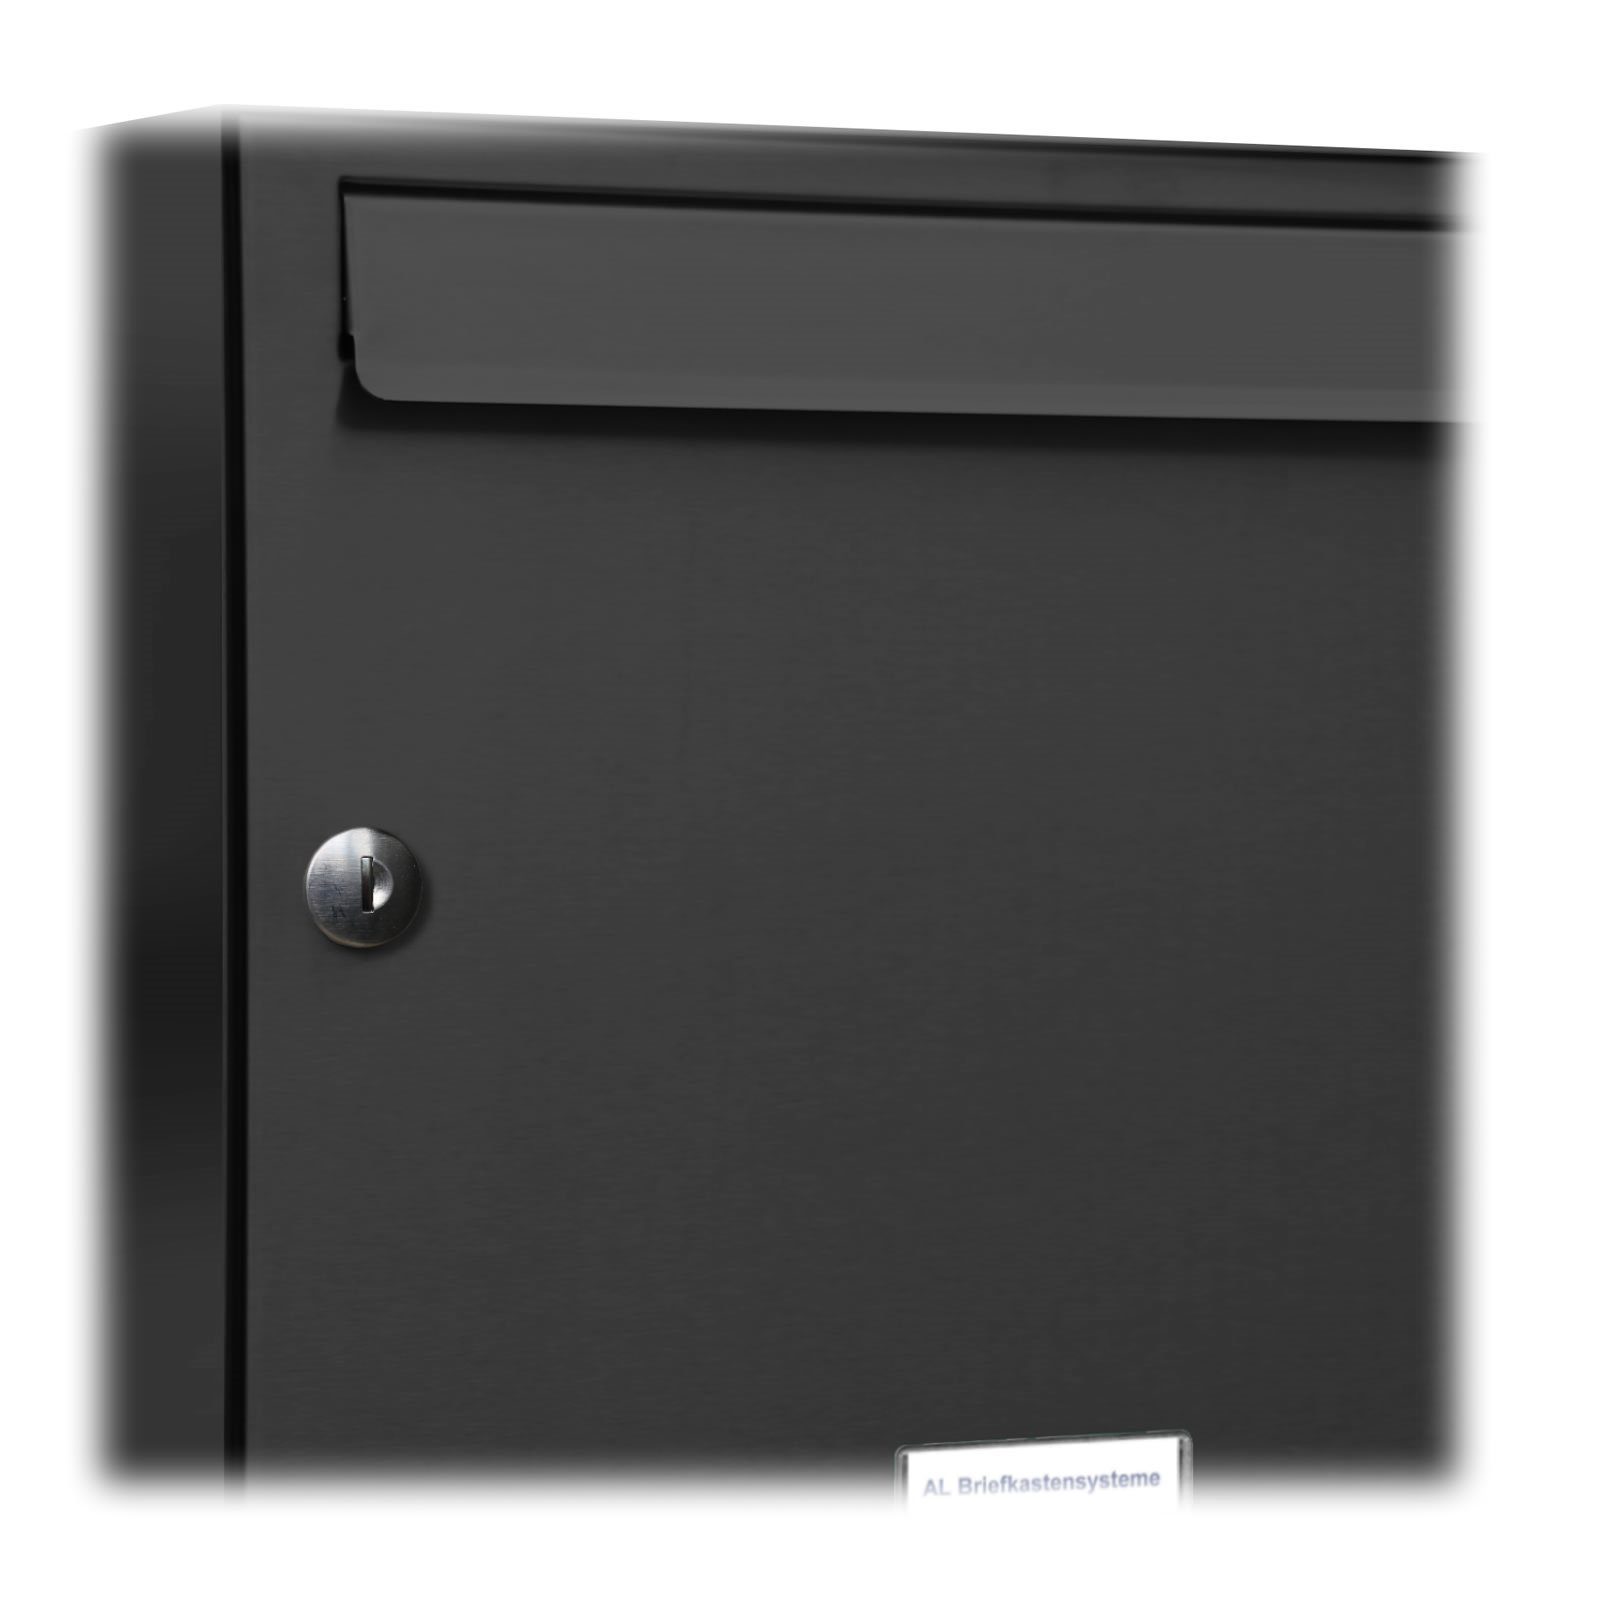 AL Briefkastensysteme Wandbriefkasten 7er Premium Briefkasten Klingel 7016 Anthrazit Farbe 4x2 RAL Außen